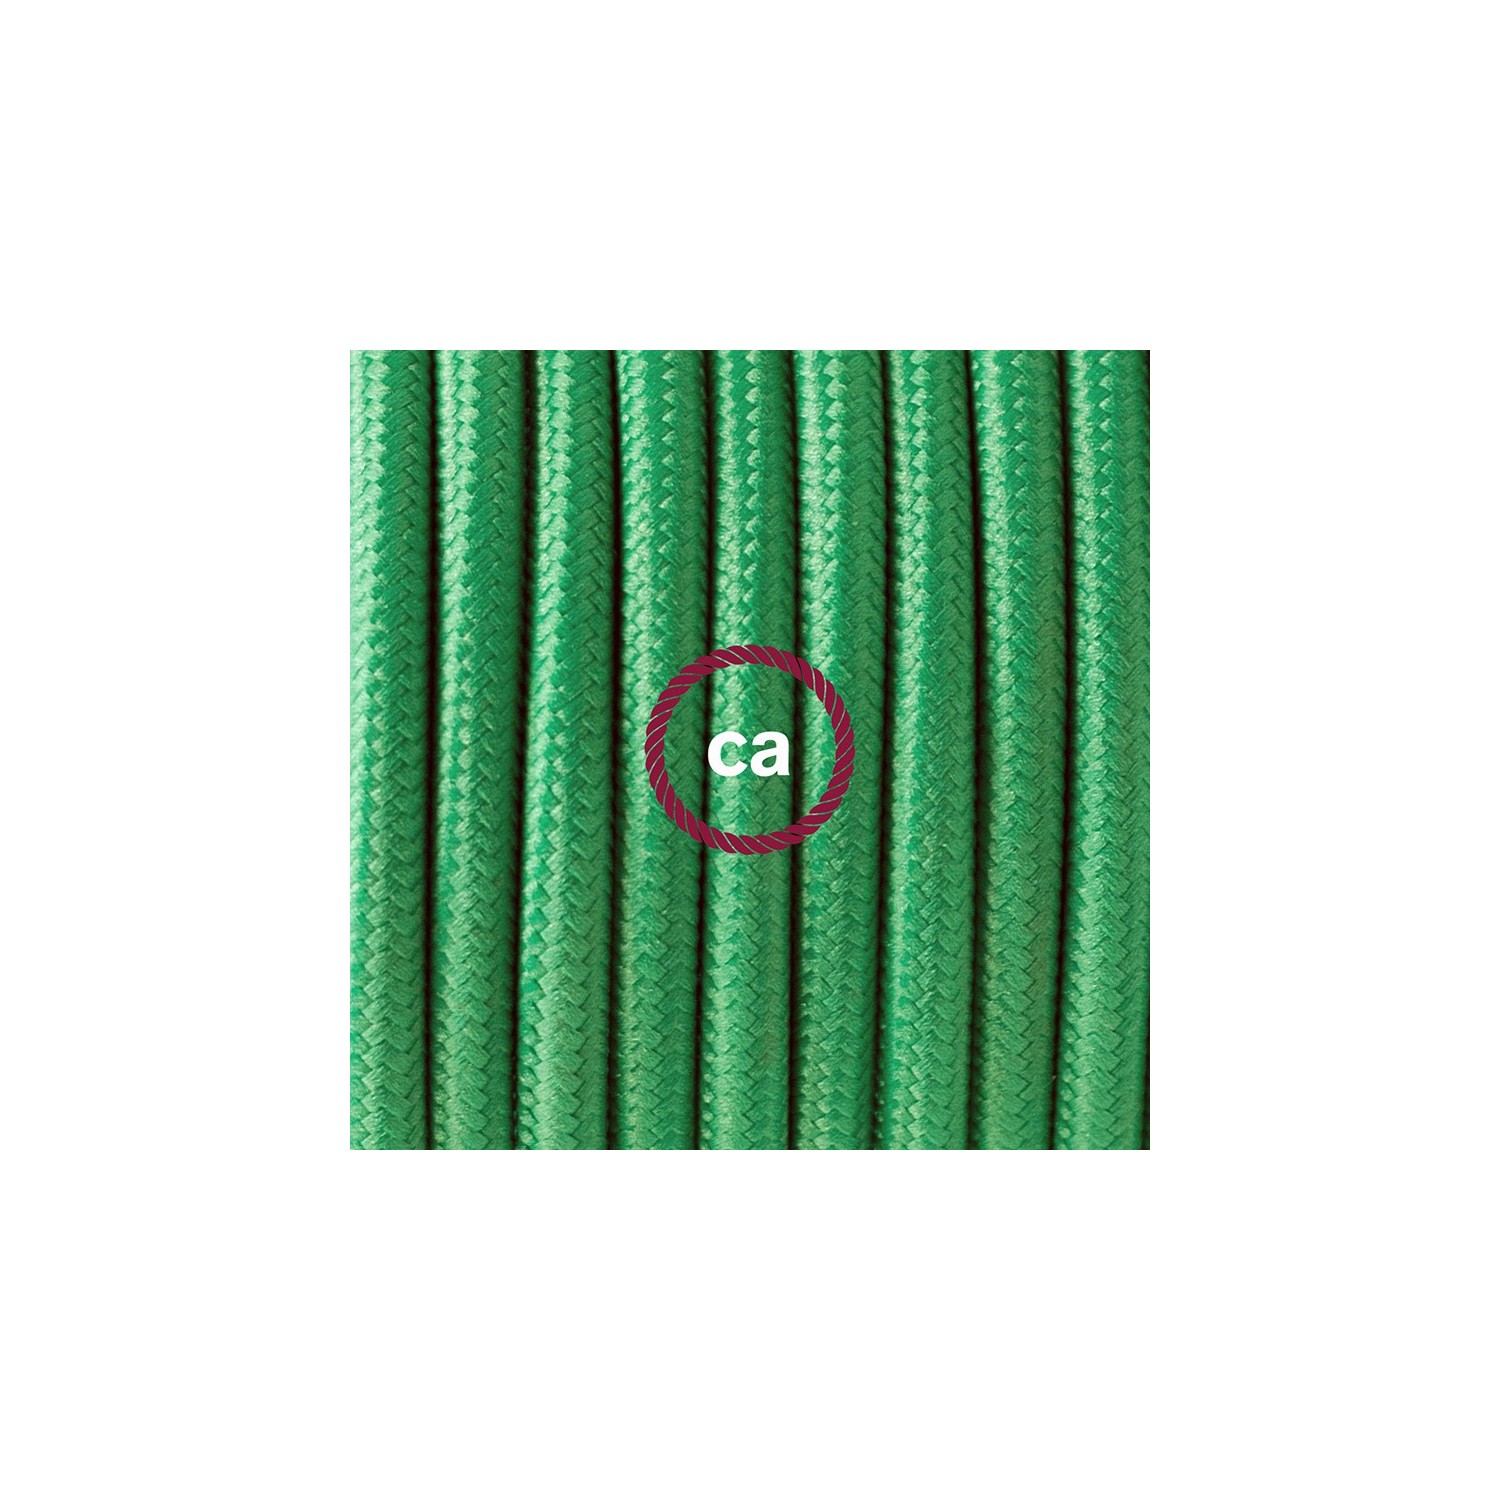 Ronde flexibele textielkabel van viscose met schakelaar en stekker. RM06 - groen 1,80 m.